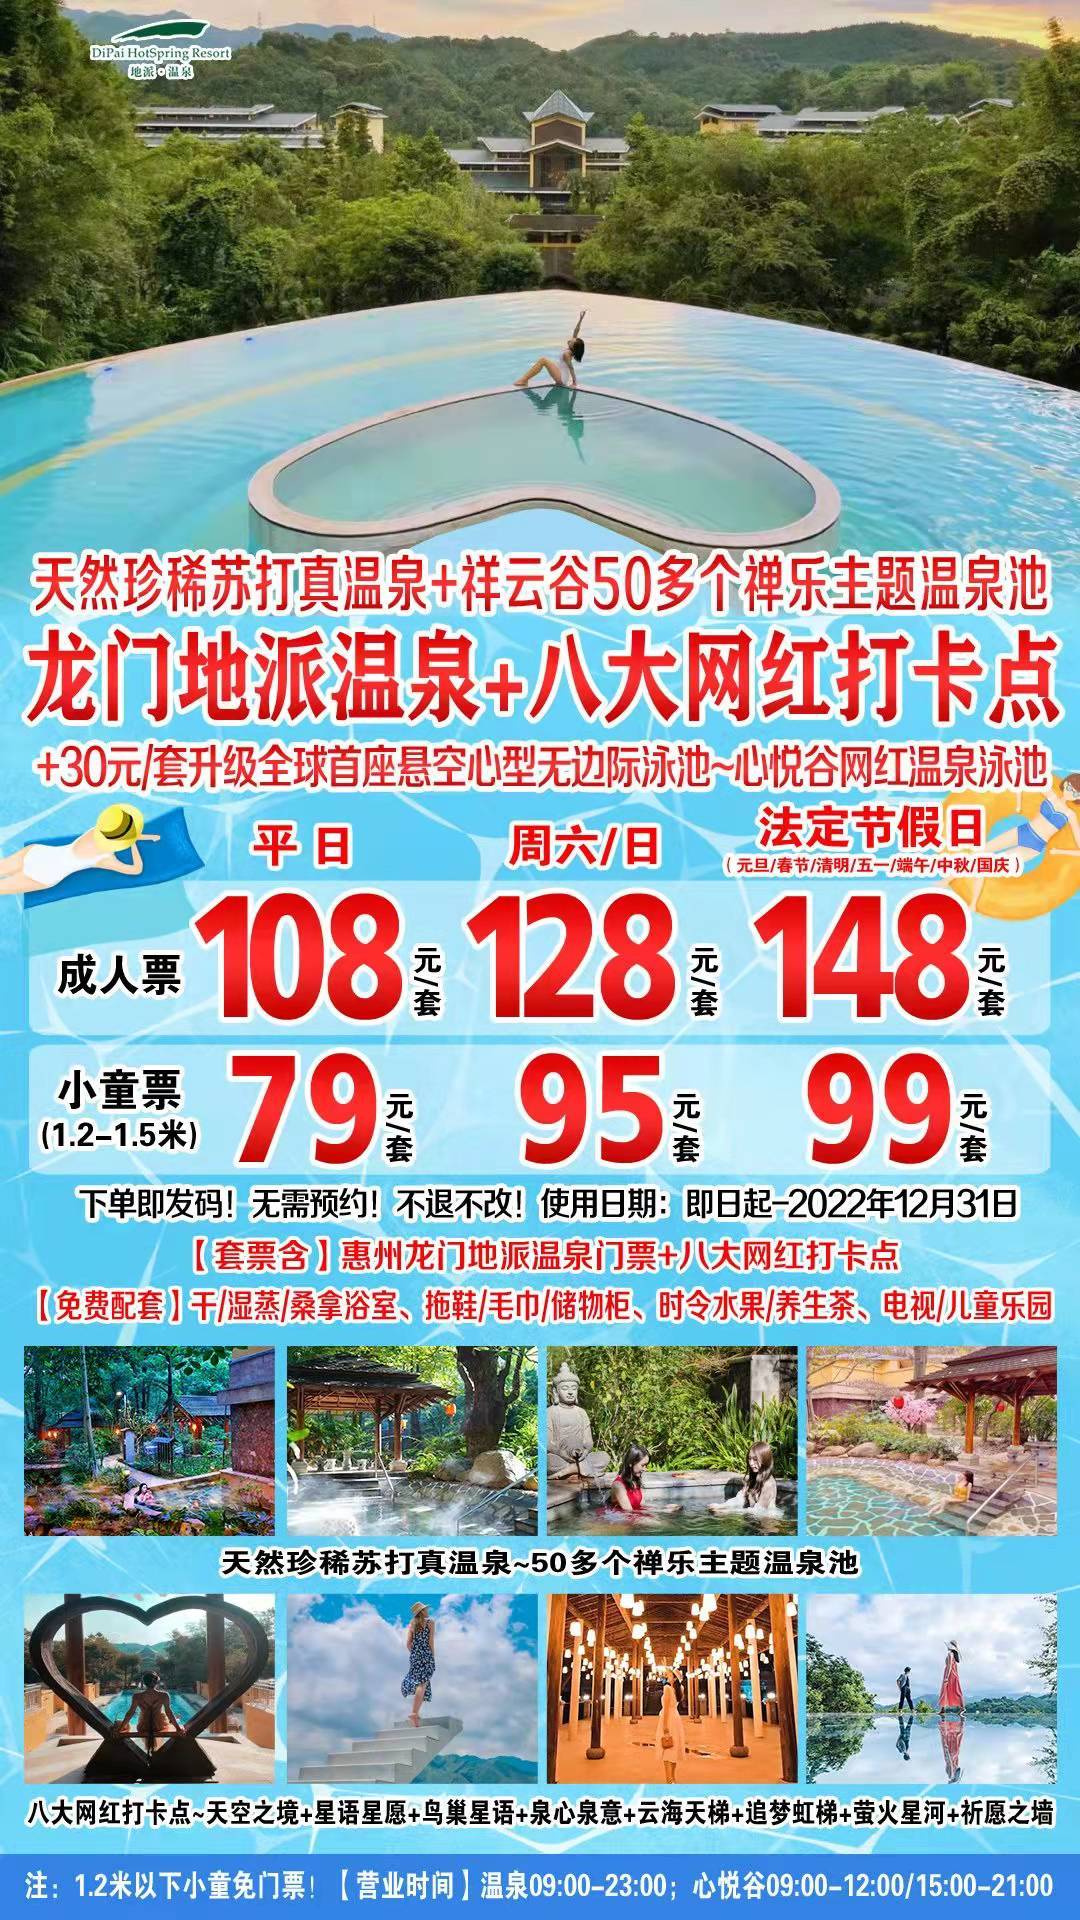 【周六/周日】惠州龙门地派温泉+八大网红打卡点~儿童（1.2-1.5米）温泉套票95元【B产品，有效期至2022年12月31日】